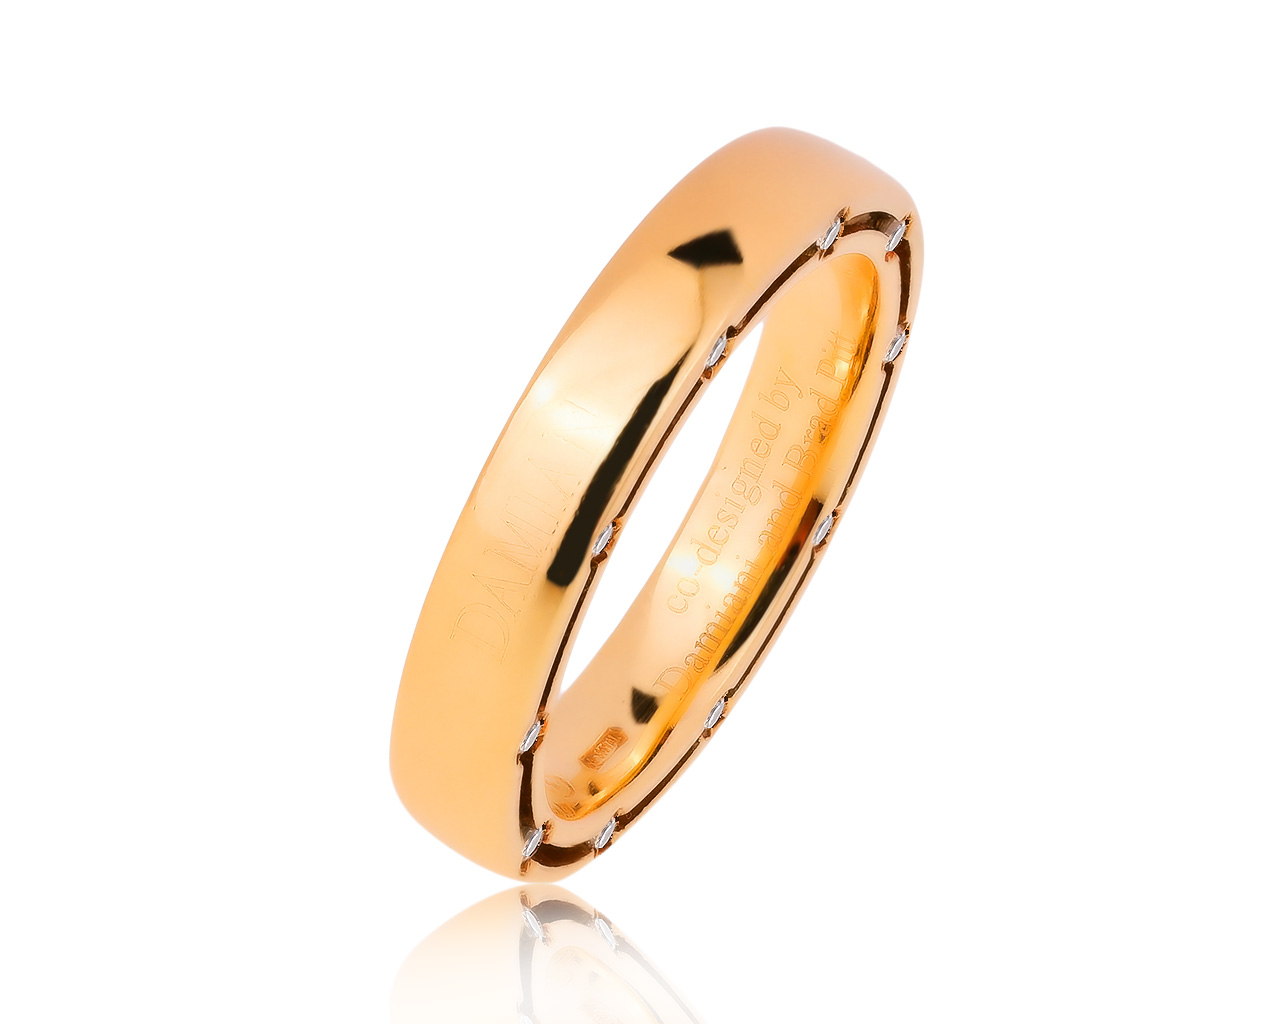 Оригинальное золотое кольцо с бриллиантами 0.20ct Damiani D.Side